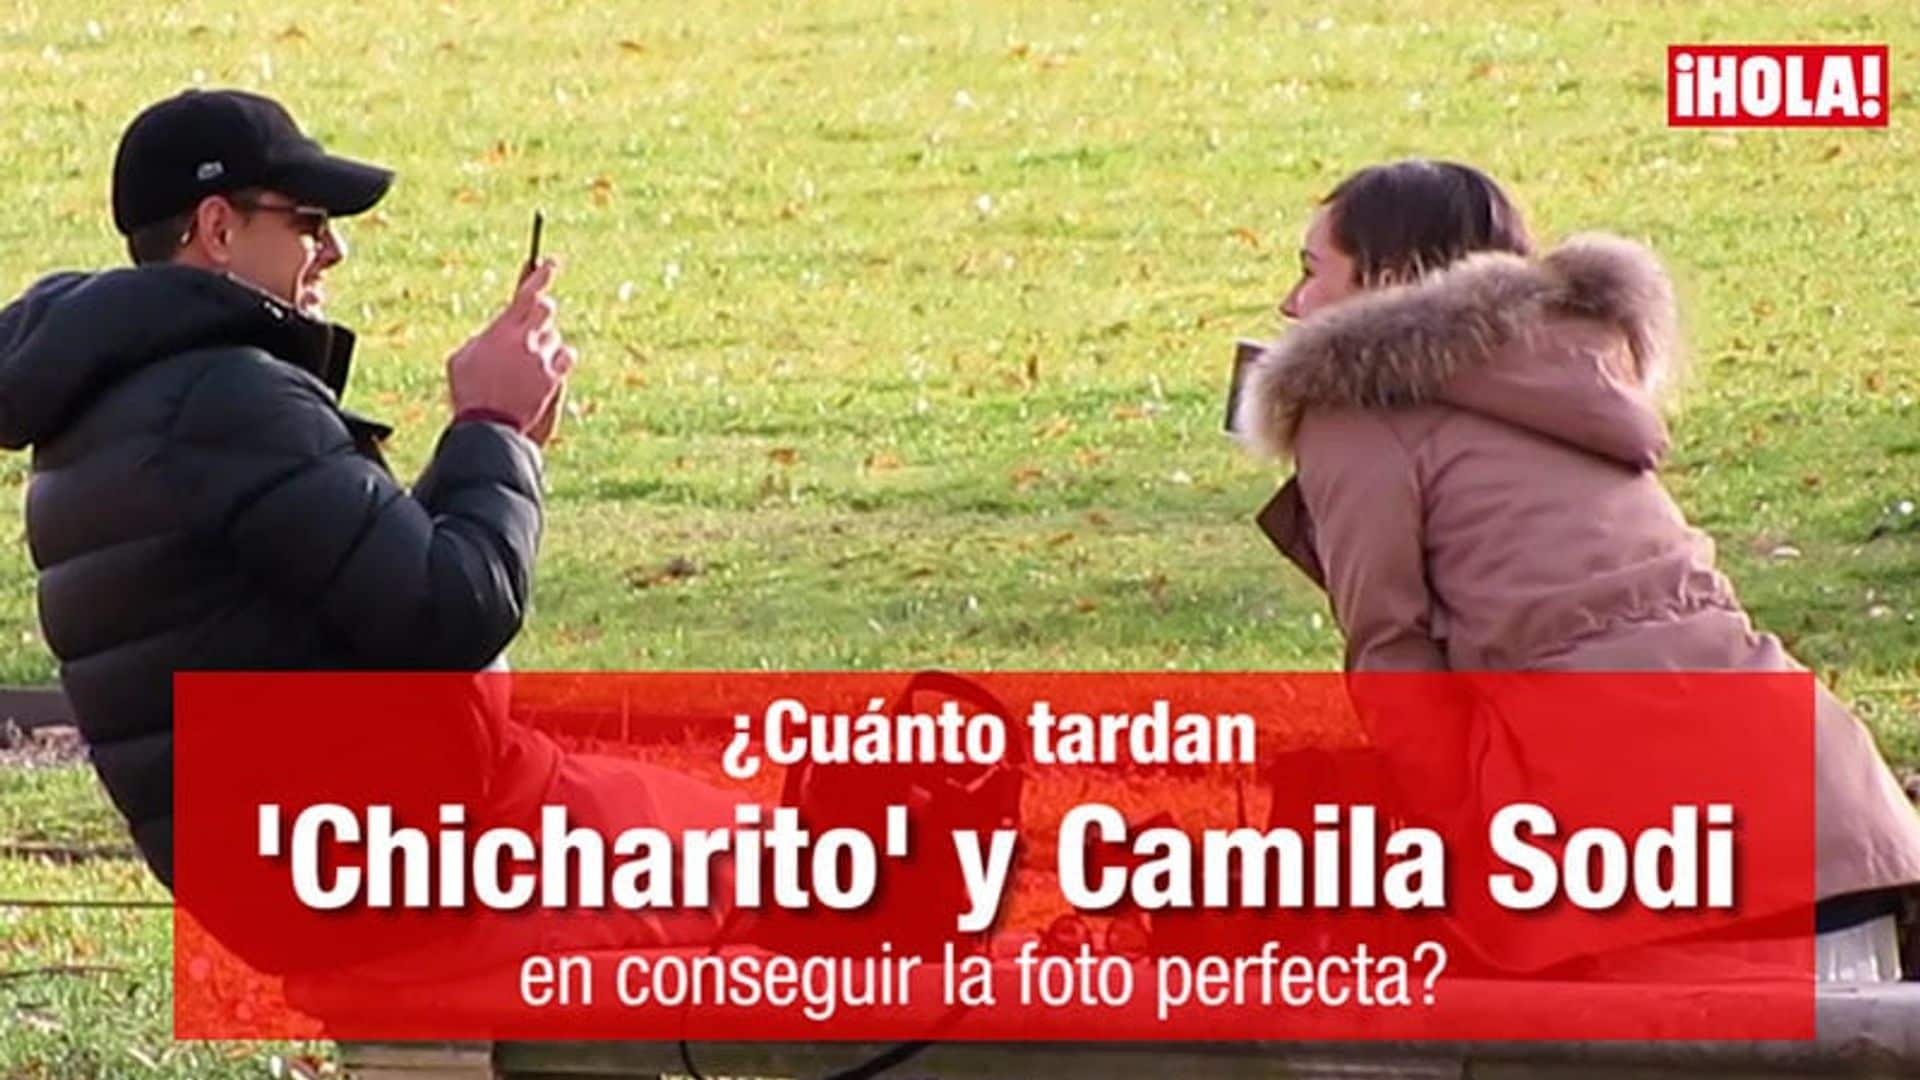 VIDEO EXCLUSIVO: Así fue la escapada romántica del Chicharito y Camila Sodi en París